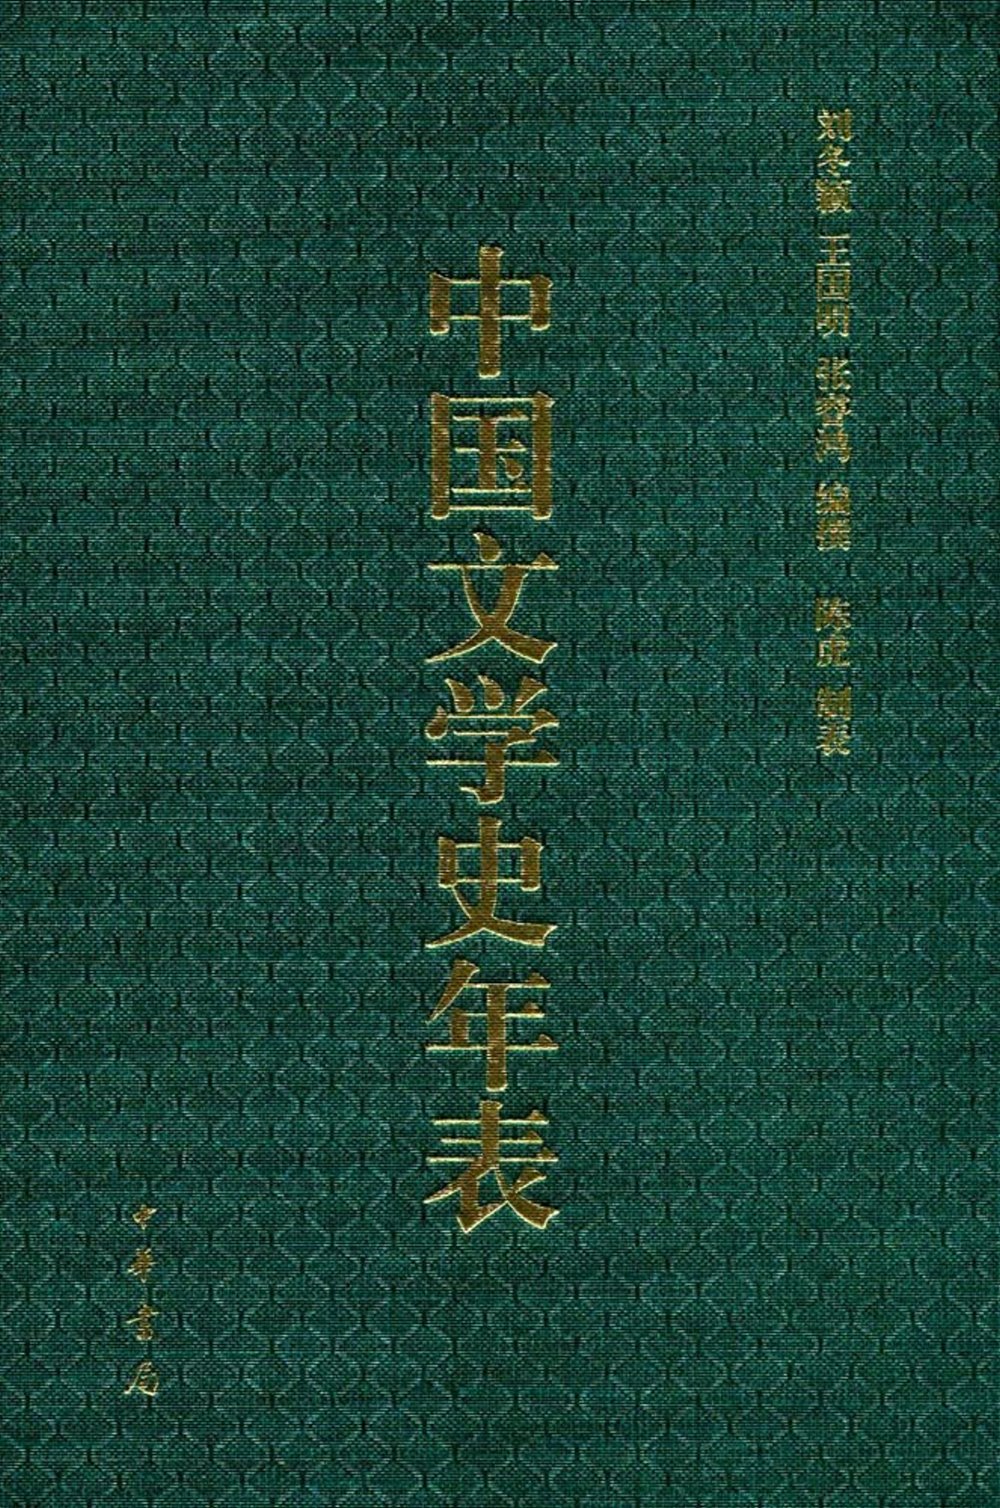 中國文學史年表